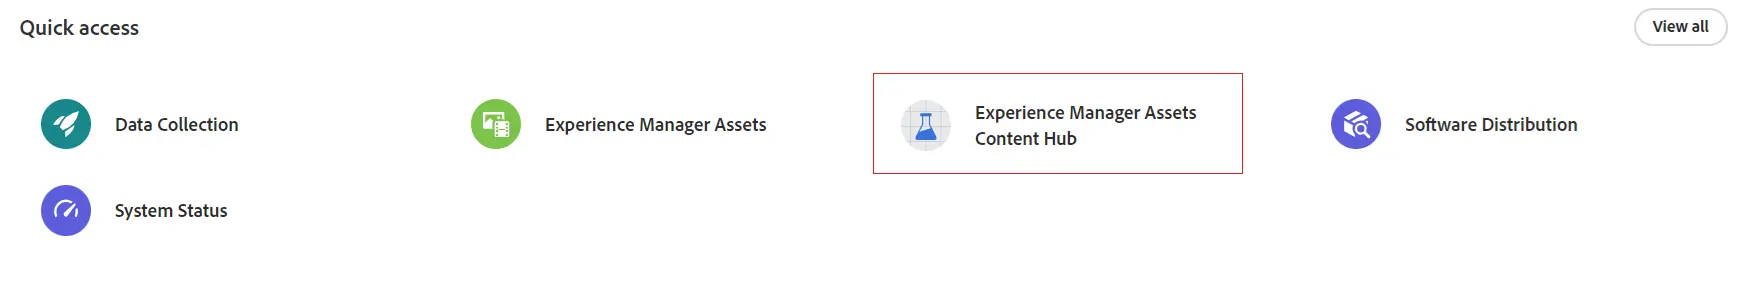 Content Hub Access